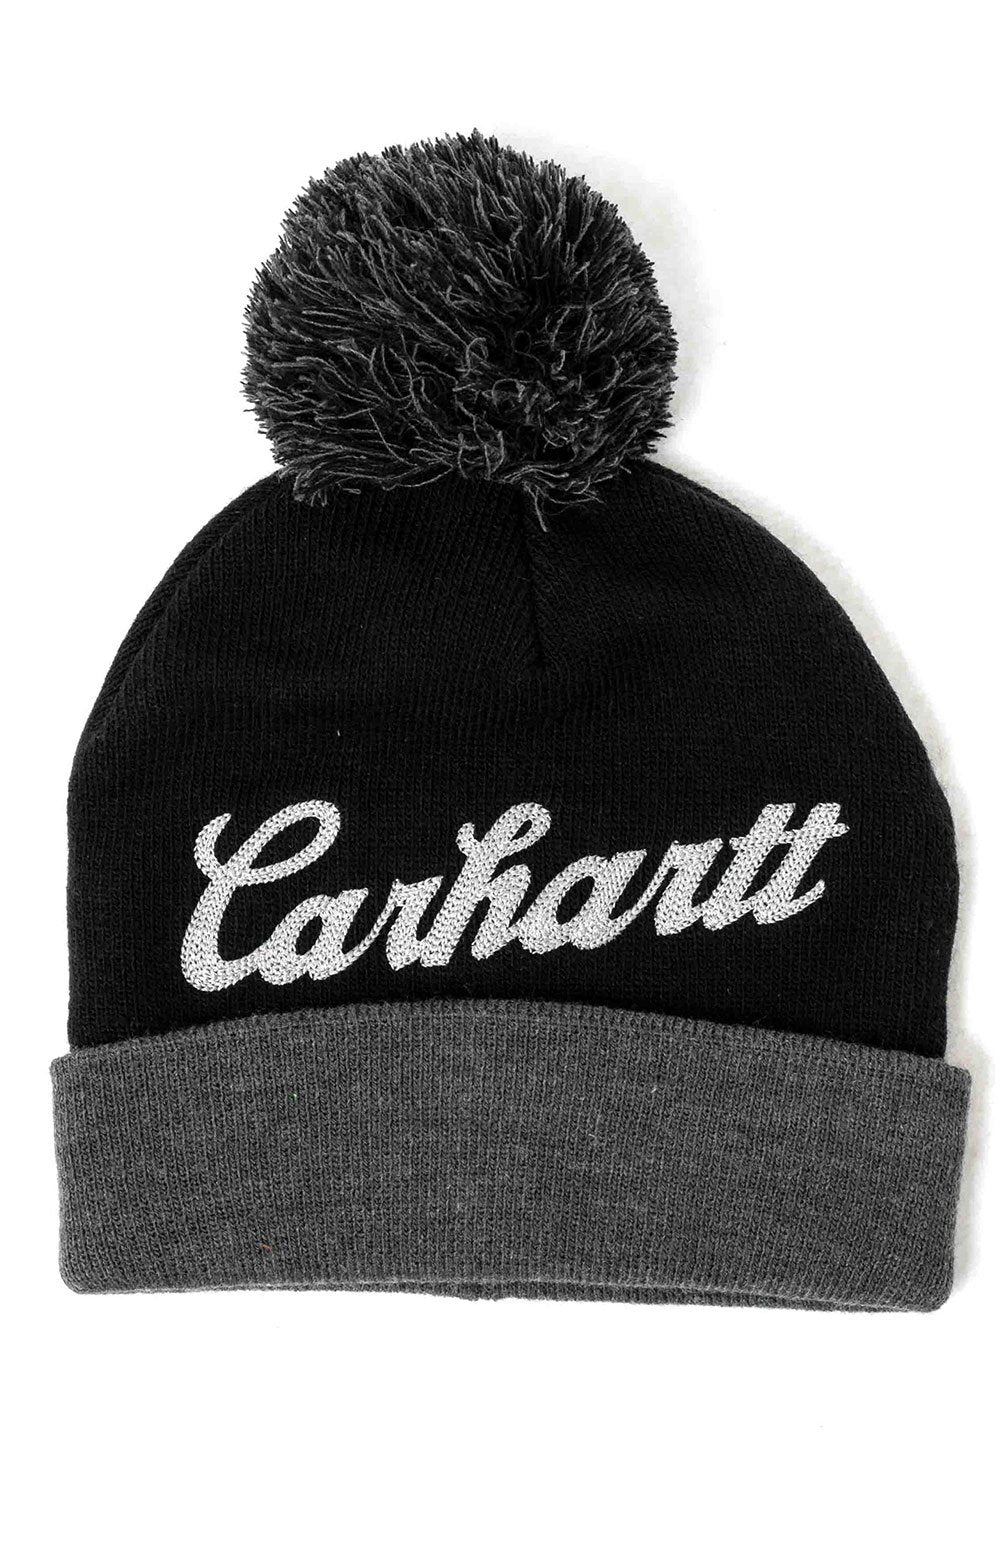 Carhartt Chainstitch Lookout Beanie (Black)